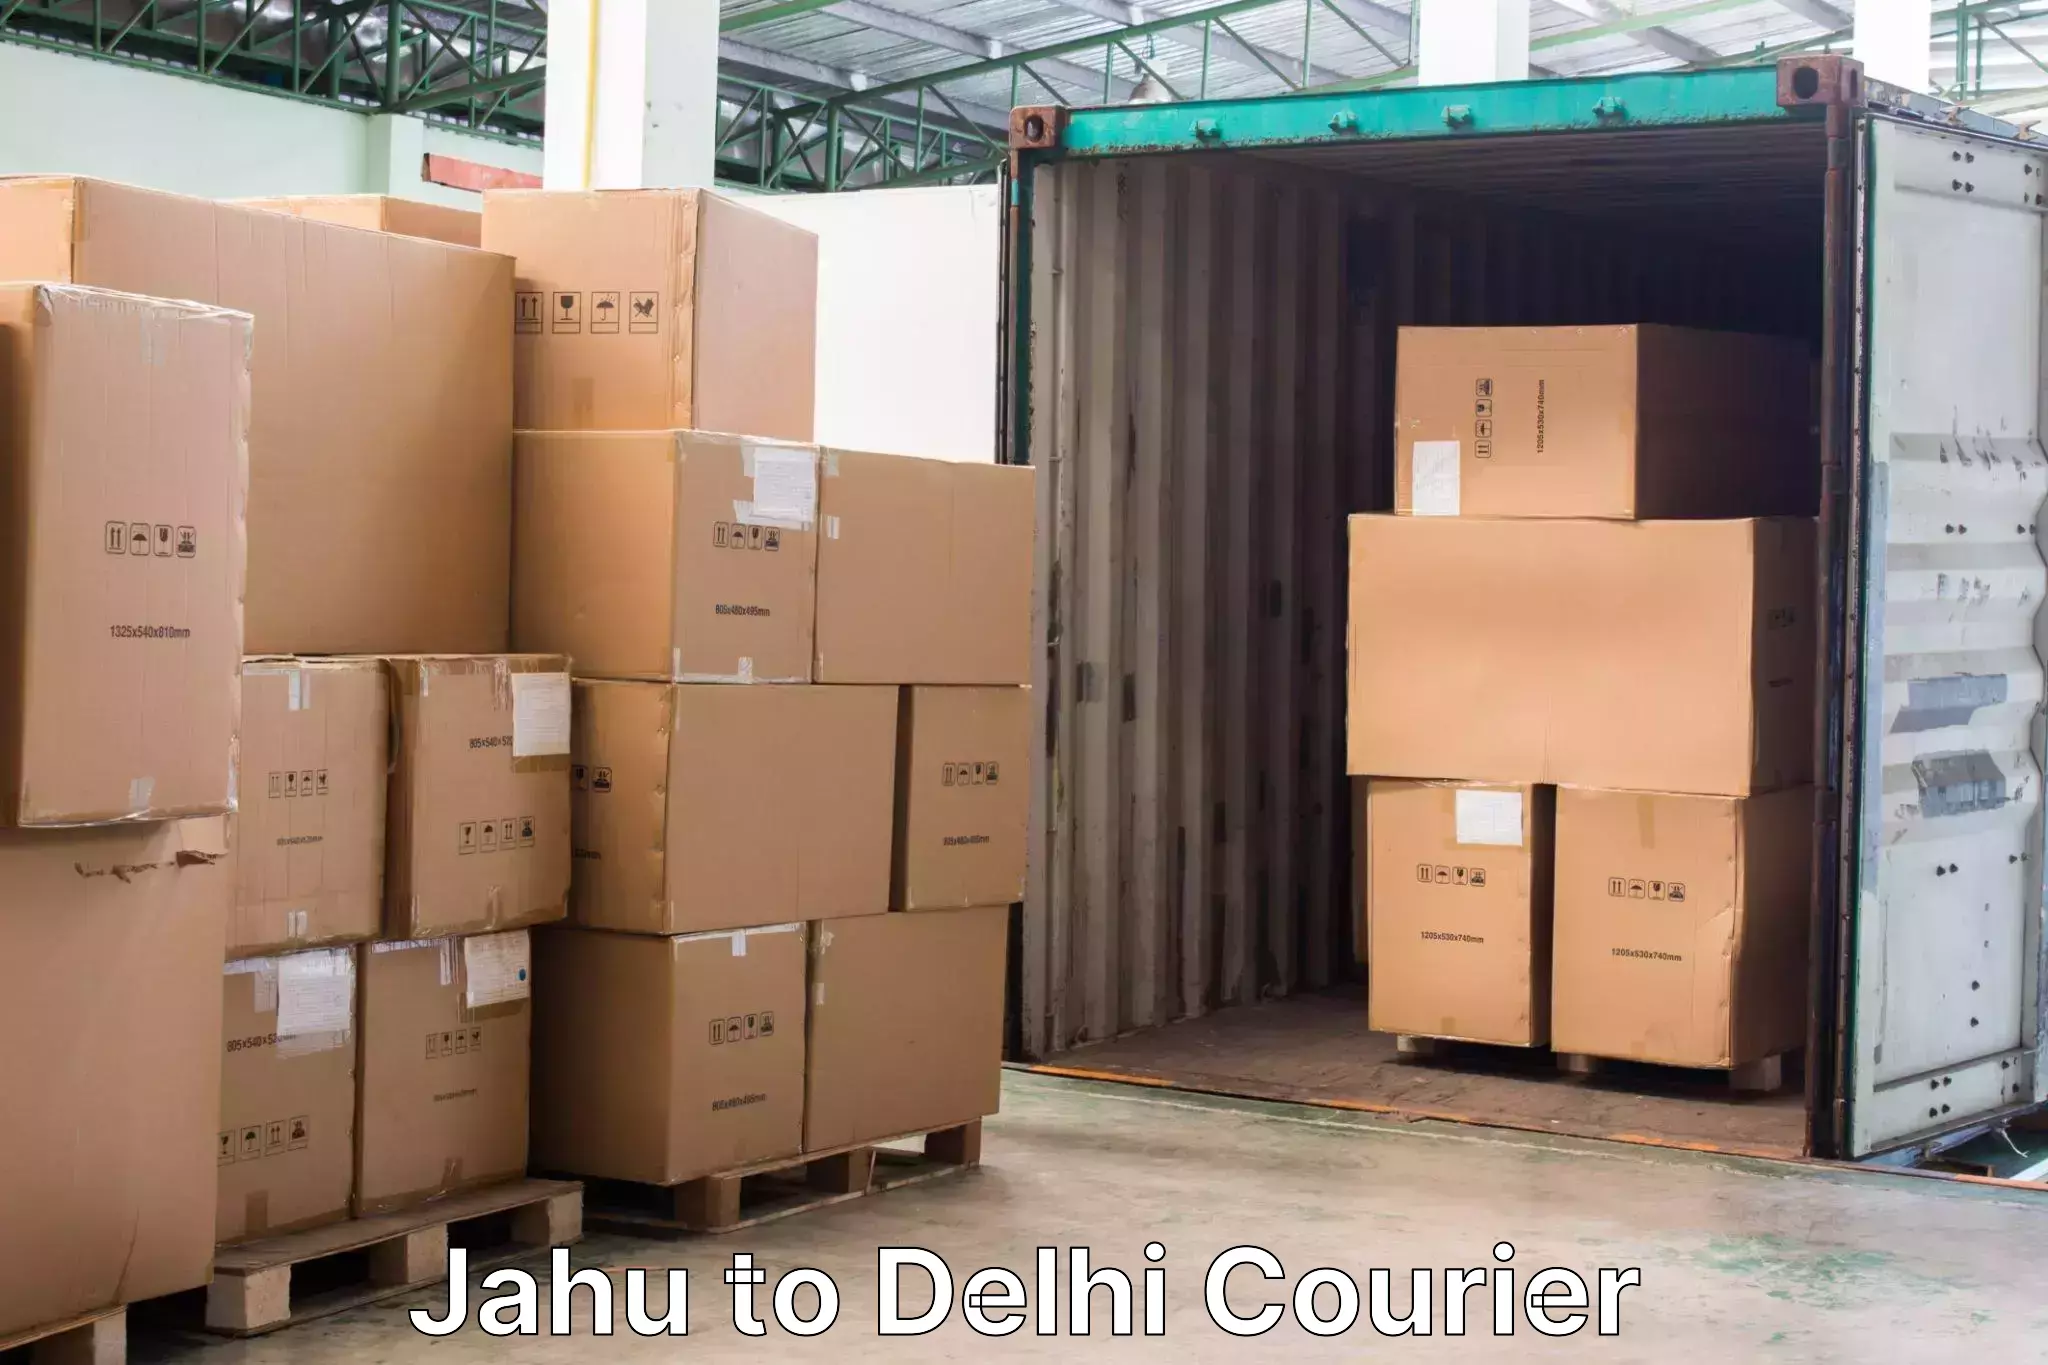 Baggage relocation service Jahu to IIT Delhi